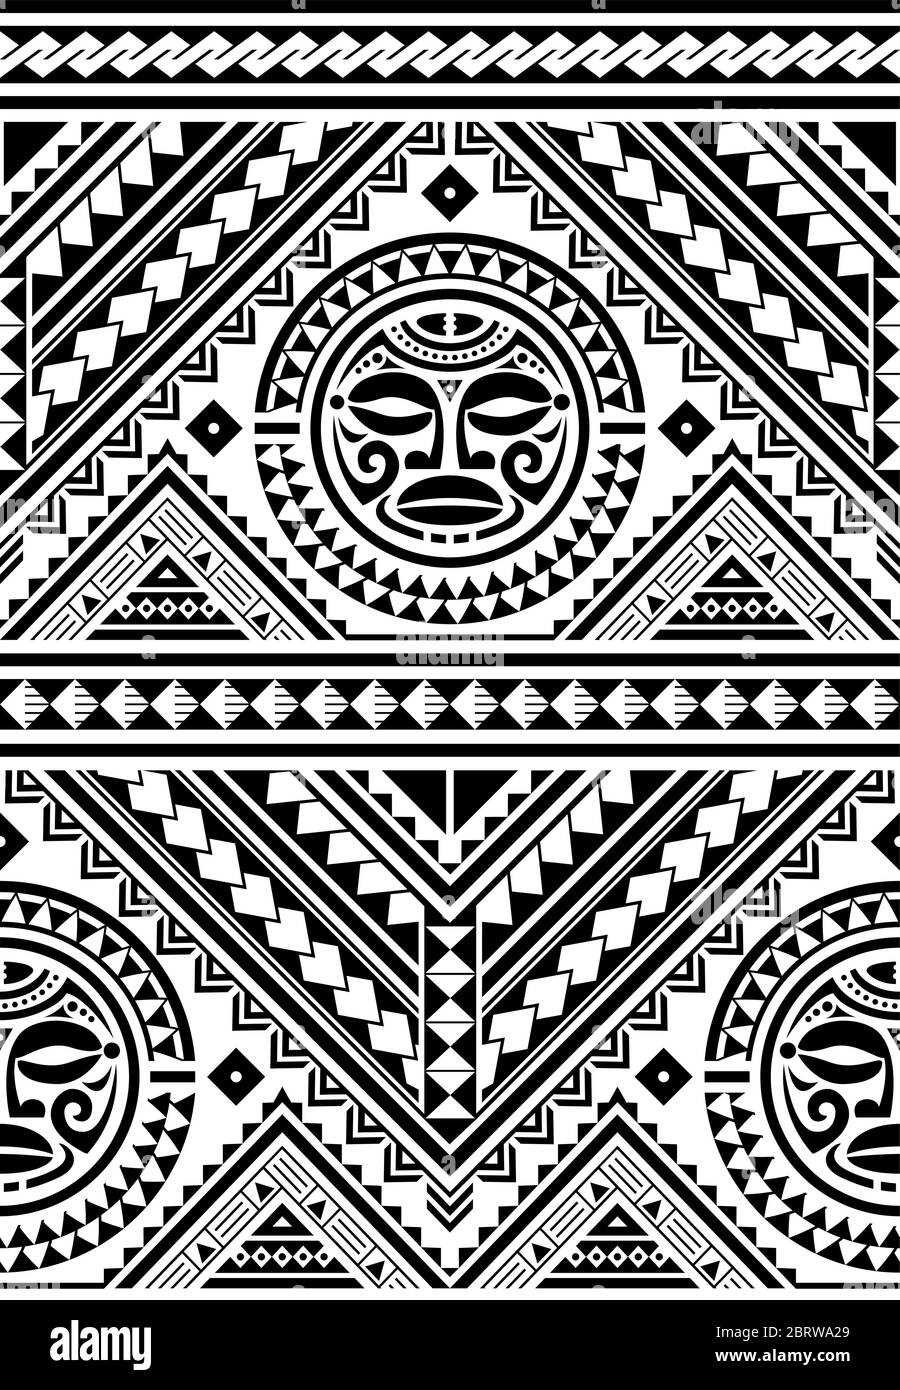 Polynesische nahtlose geometrische Vektor-Muster mit Maori Gesicht Mandala Tattoo-Design, hawaiianischen Tribal Hintergrund von der Kunst inspiriert traditionelle geometrische A Stock Vektor